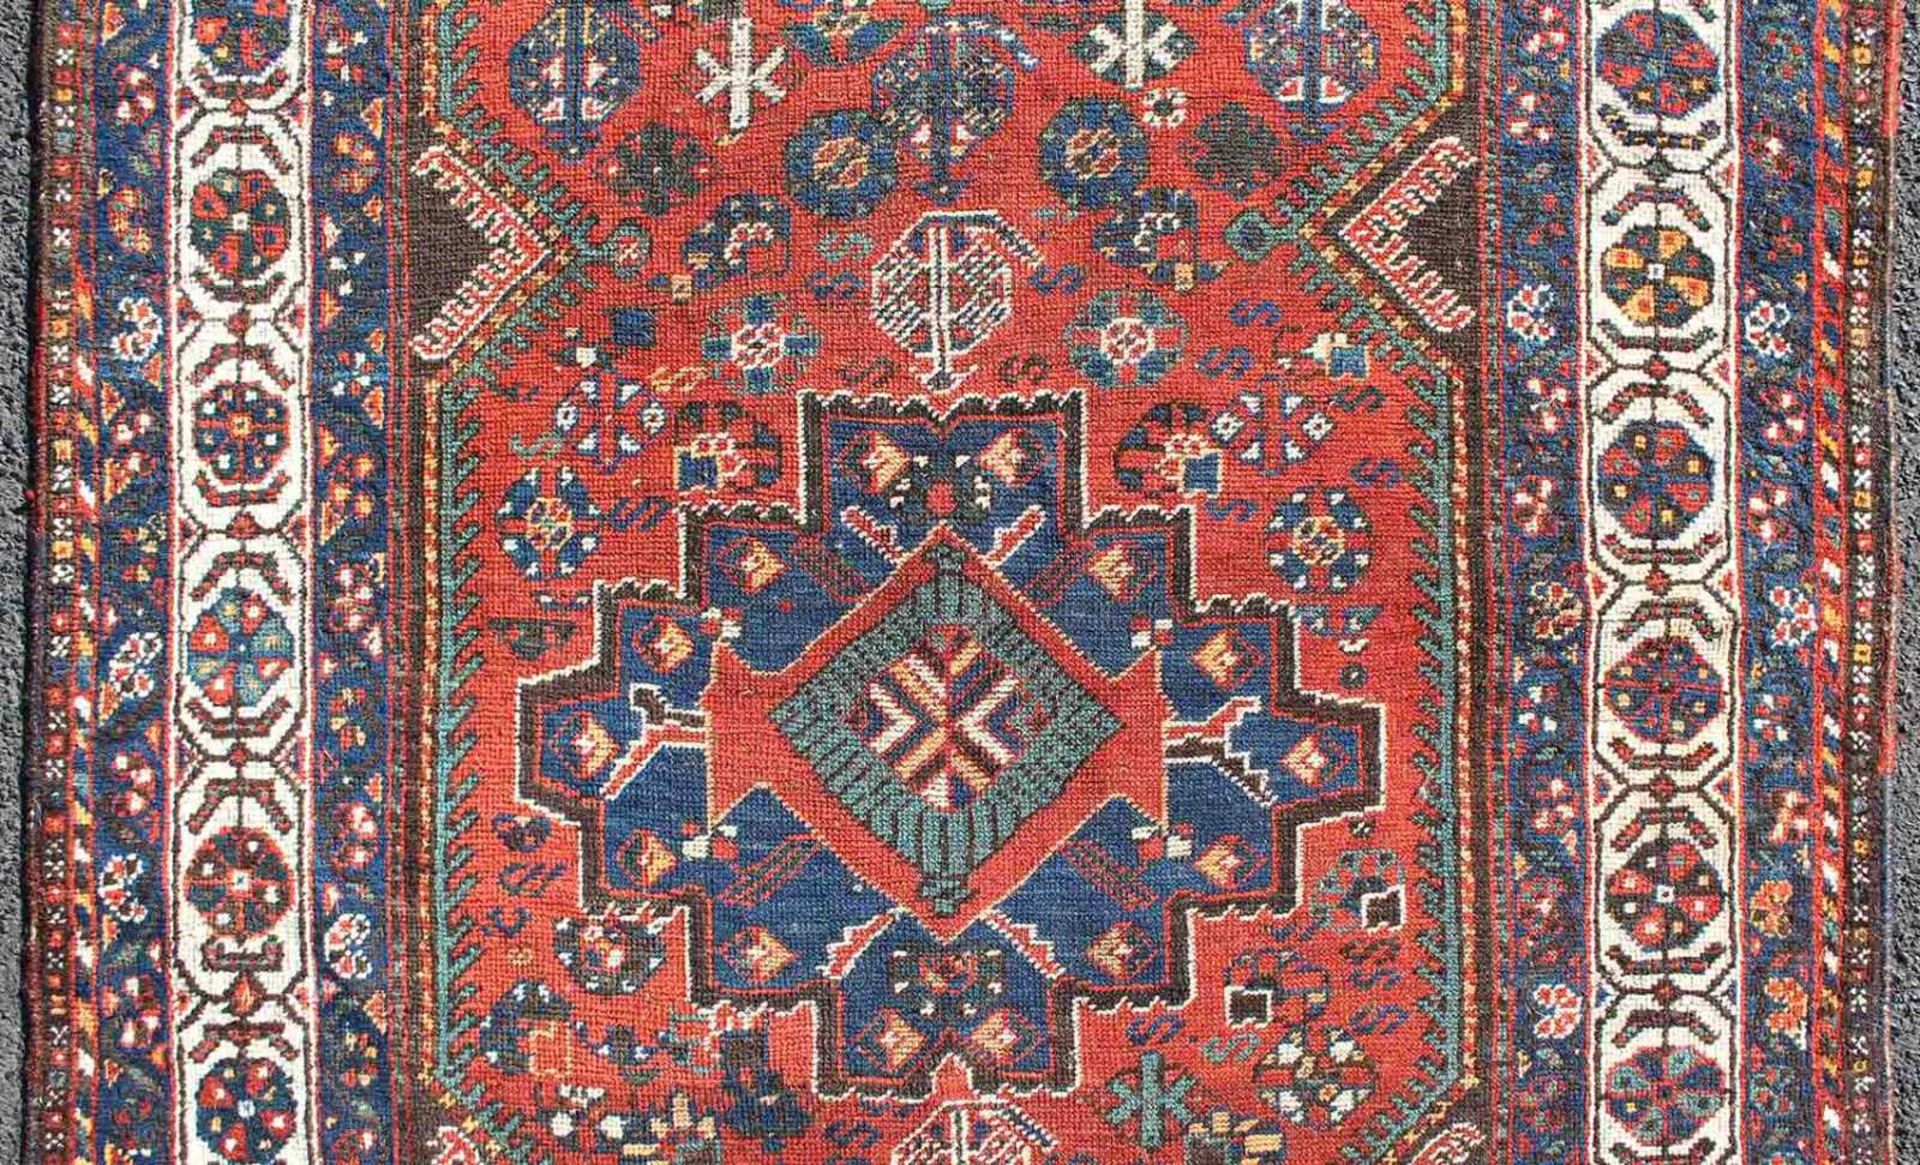 Schiraz Perserteppich. Iran. Antik, um 1920.153 cm x 110 cm. Handgeknüpft. Wolle auf Wolle. - Image 3 of 6